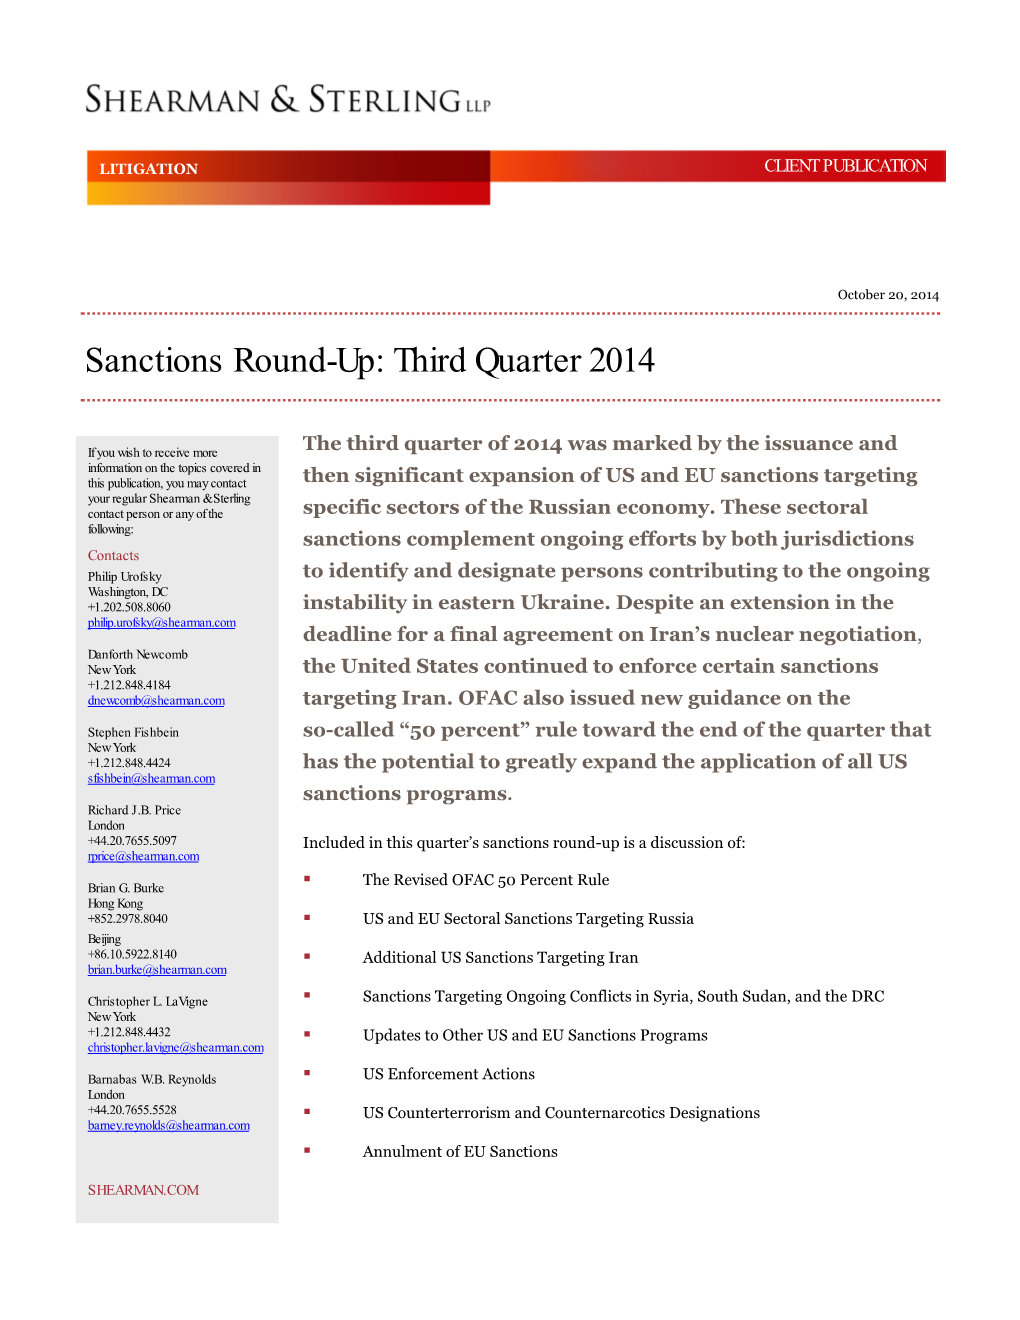 Sanctions Round up Third Quarter 2014